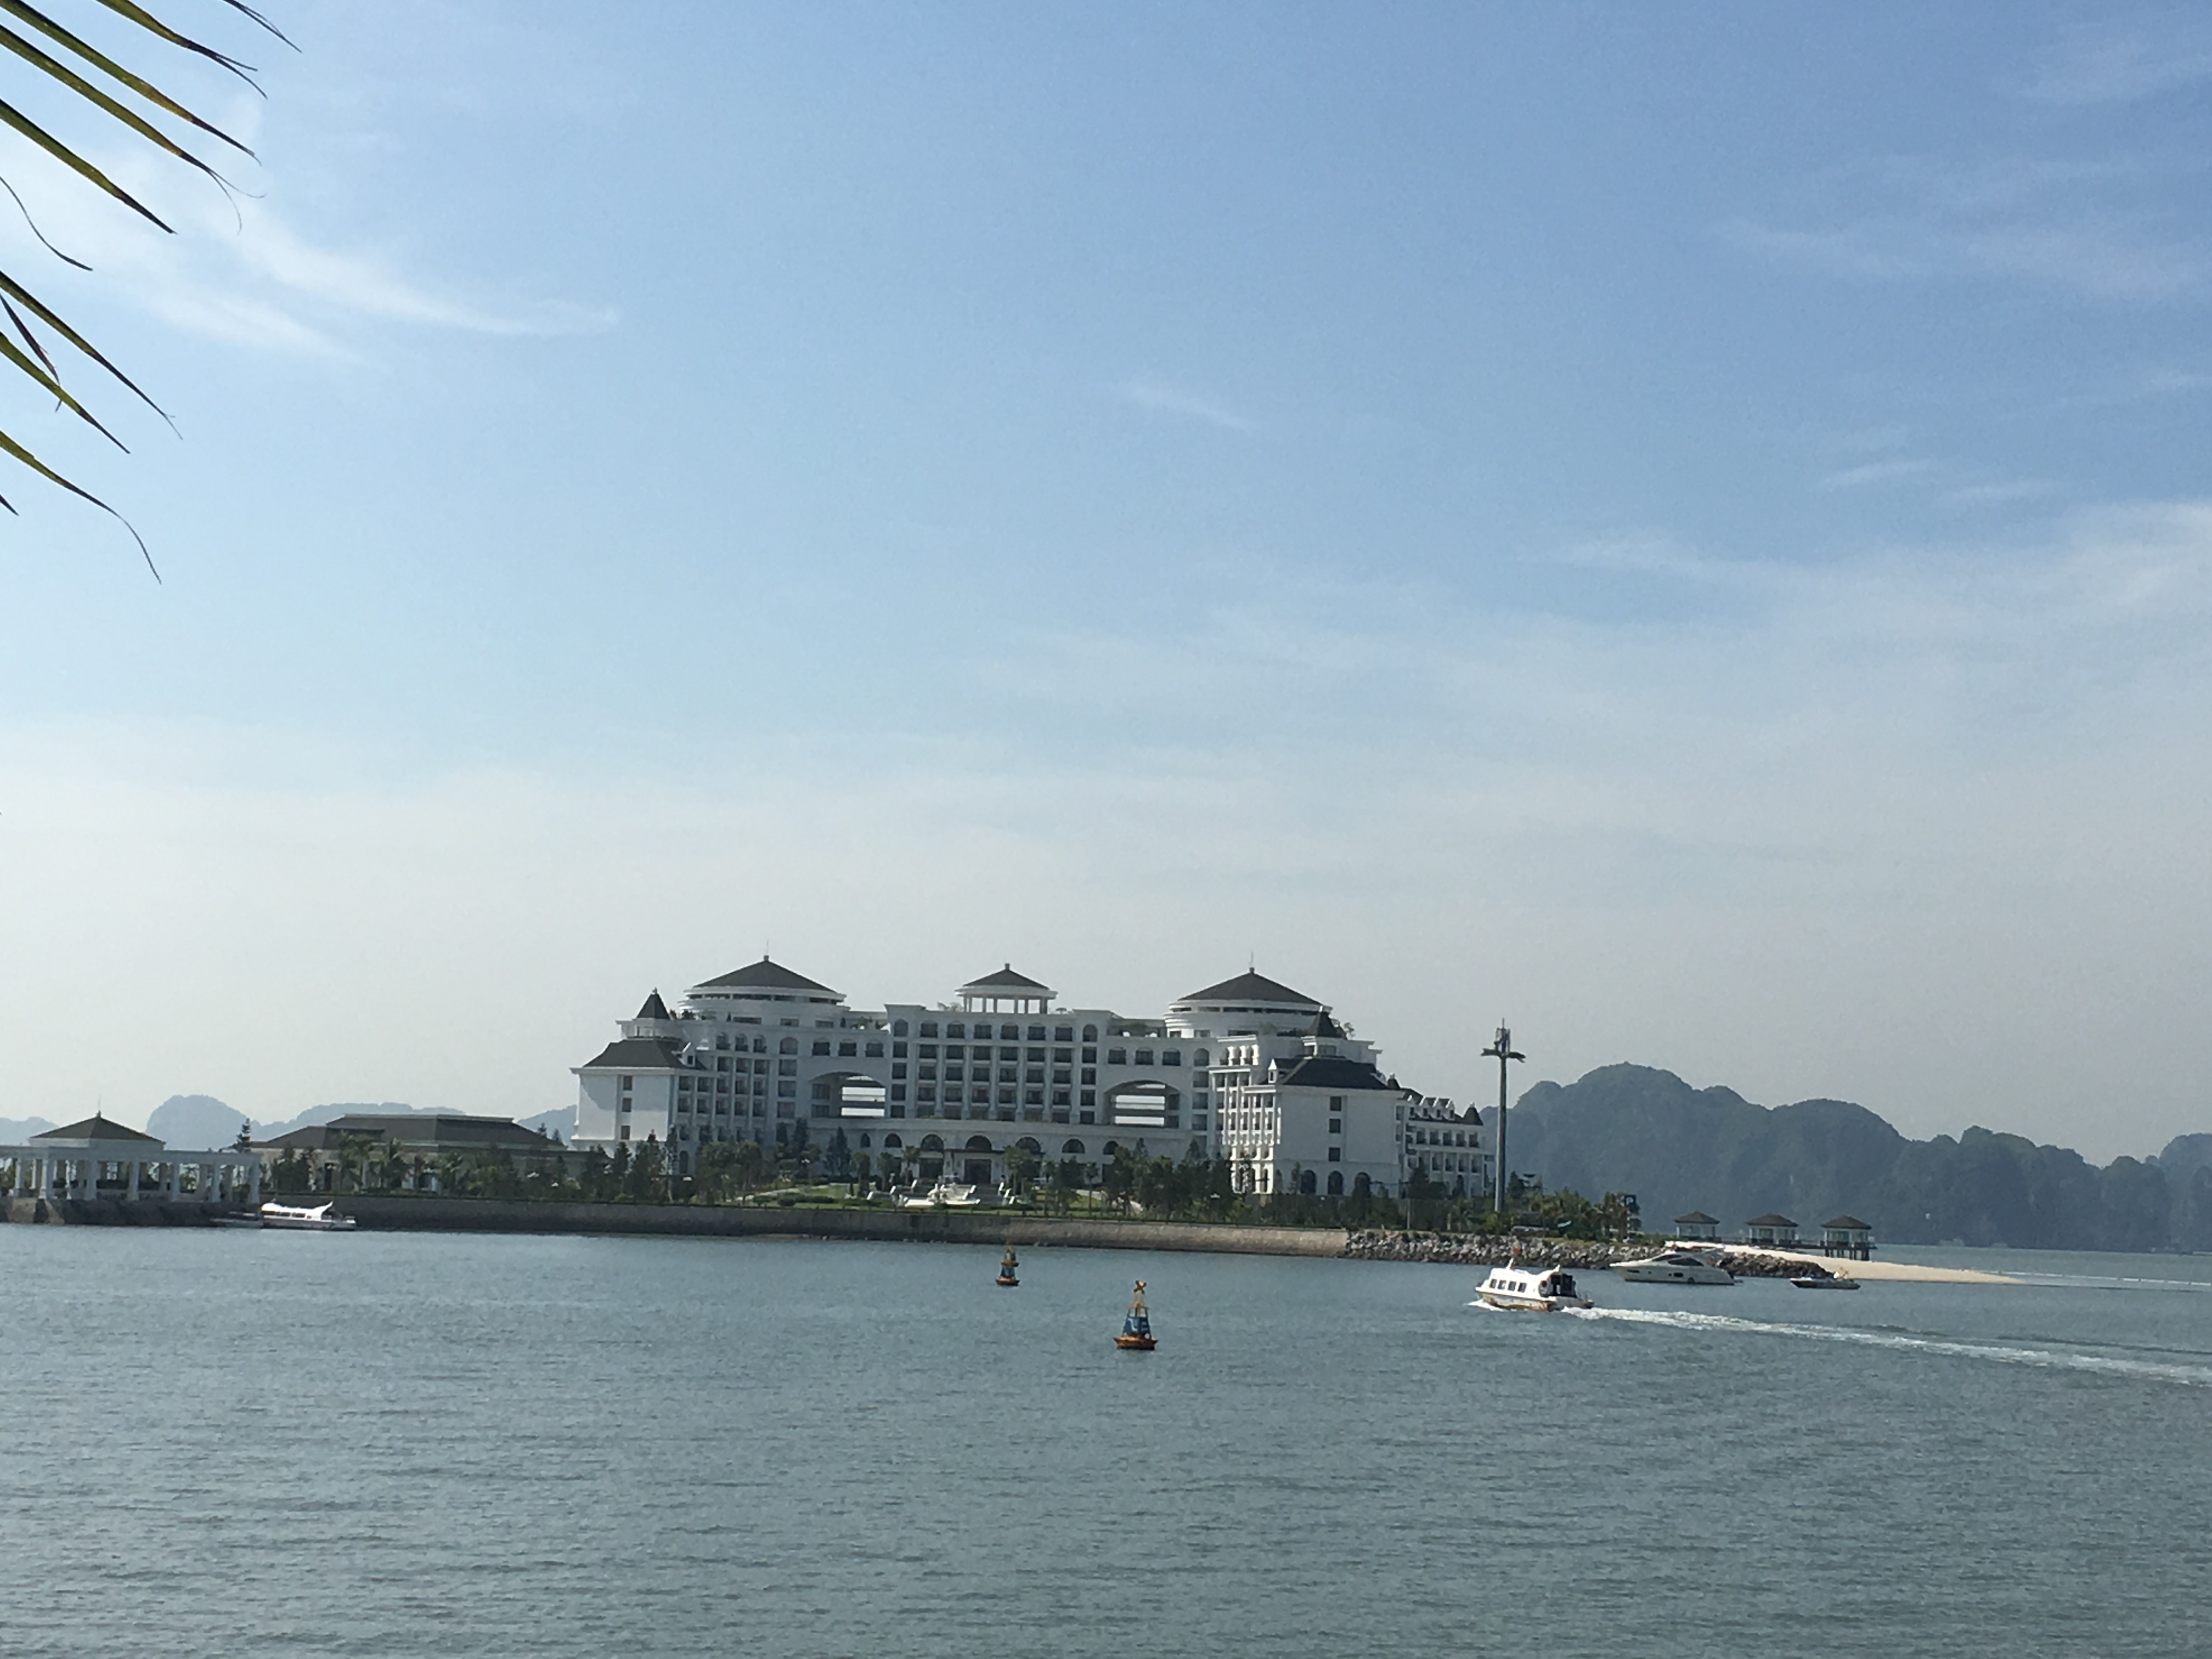 
Dự án khu khách sạn nghỉ dưỡng biển cao cấp sử dụng diện tích đất trên 78.000 m2, trong đó, khu khách sạn trên đảo Rều sử dụng trên 47.000 m2 đất và 30.000 m2 đất khu đón tiếp khách trên bờ.
